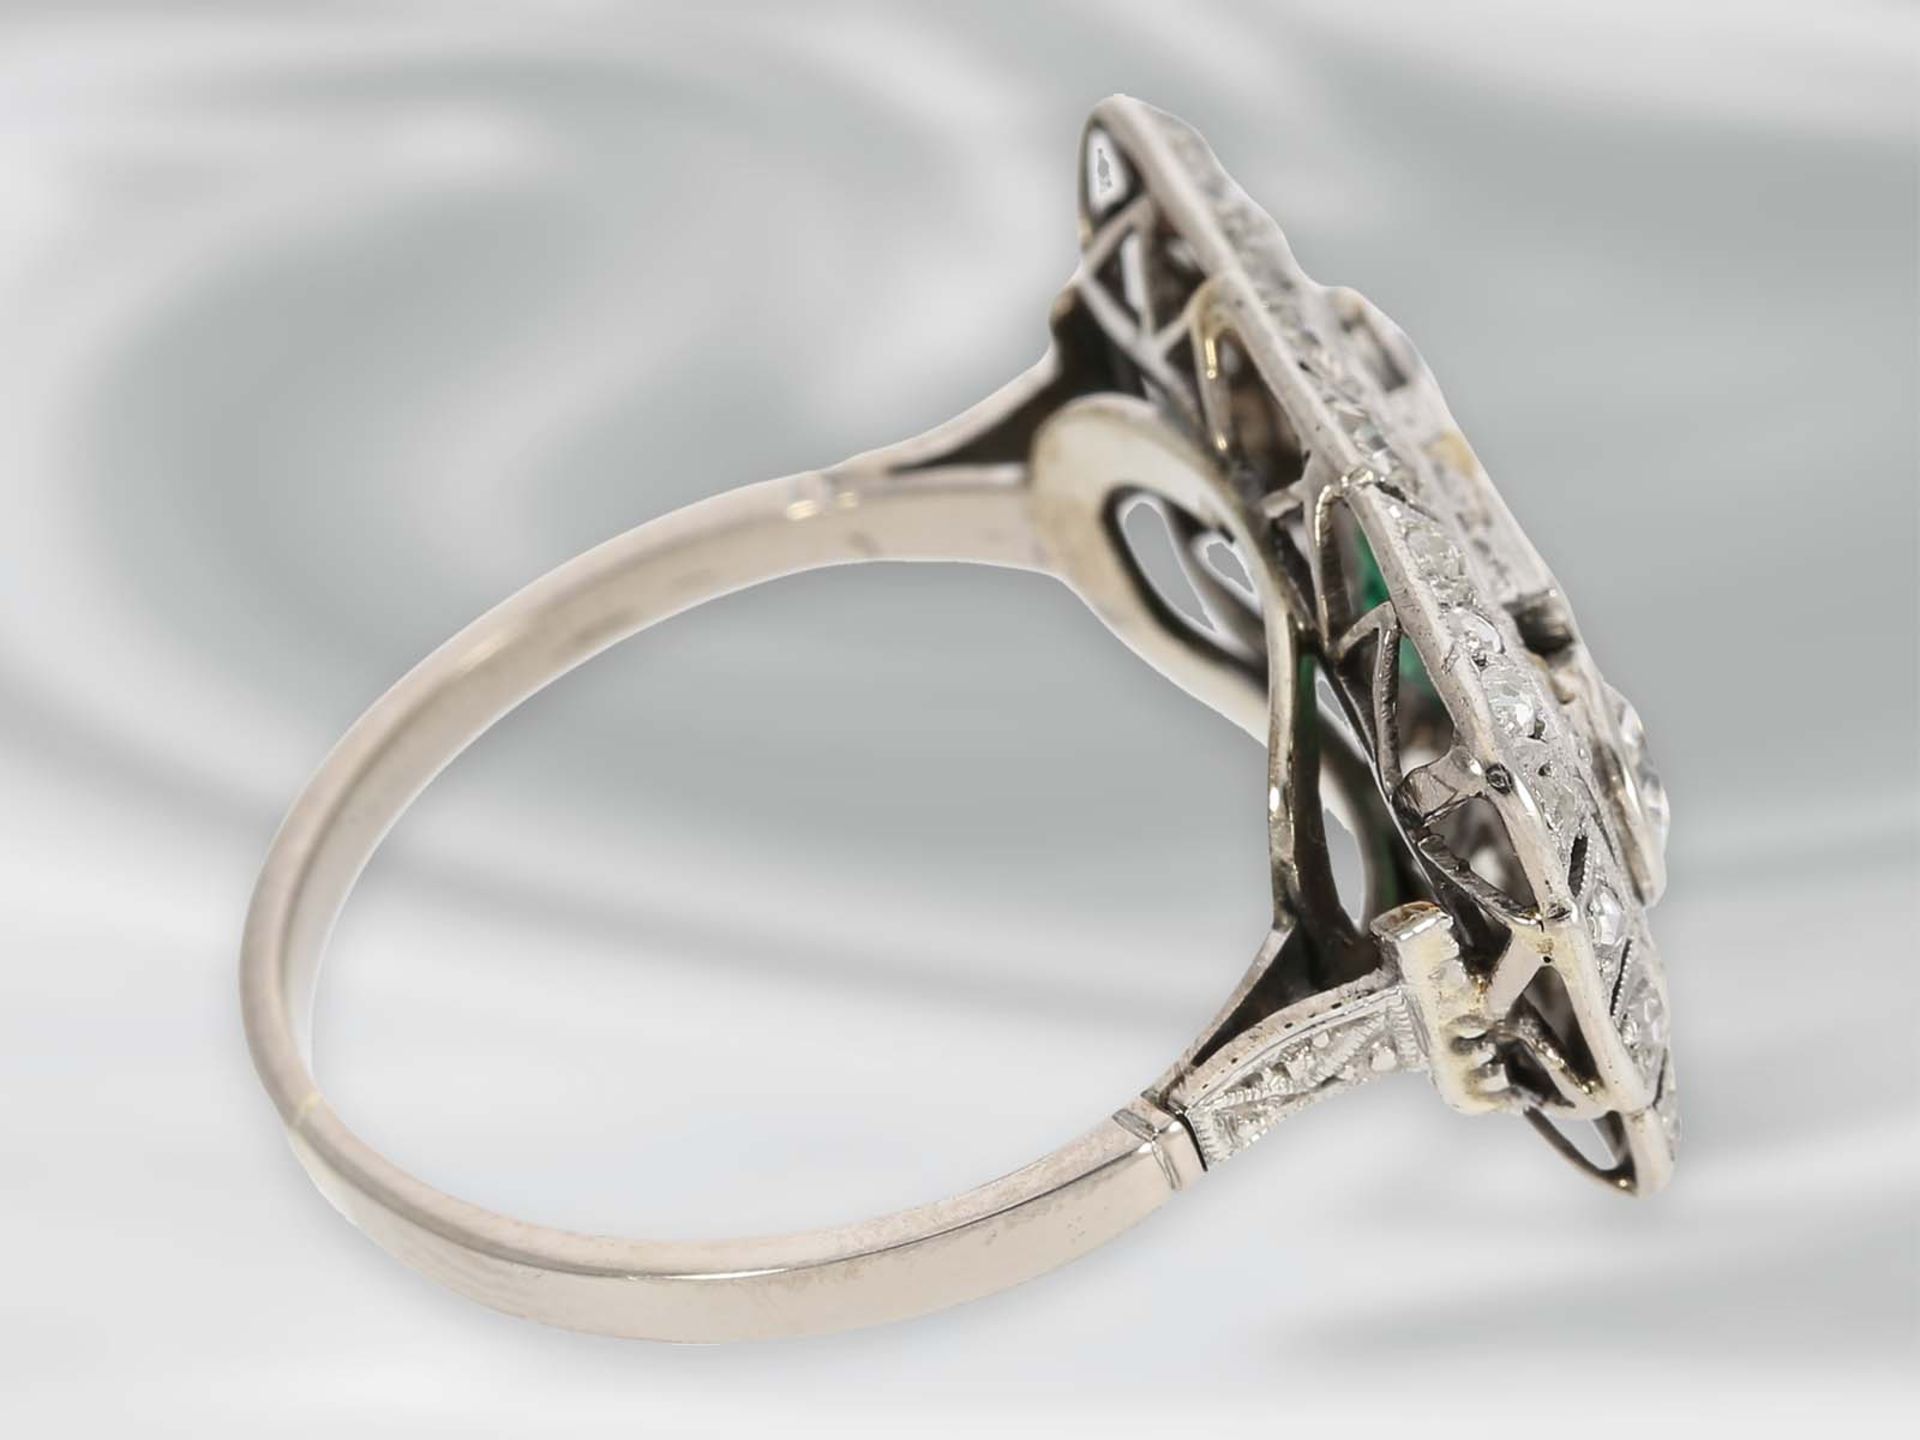 Ring: hochfeiner Art déco Diamantring mit Smaragd, 14K WeißgoldCa. Ø18mm, RG57, Ringkopf ca. 22,5 - Bild 2 aus 4